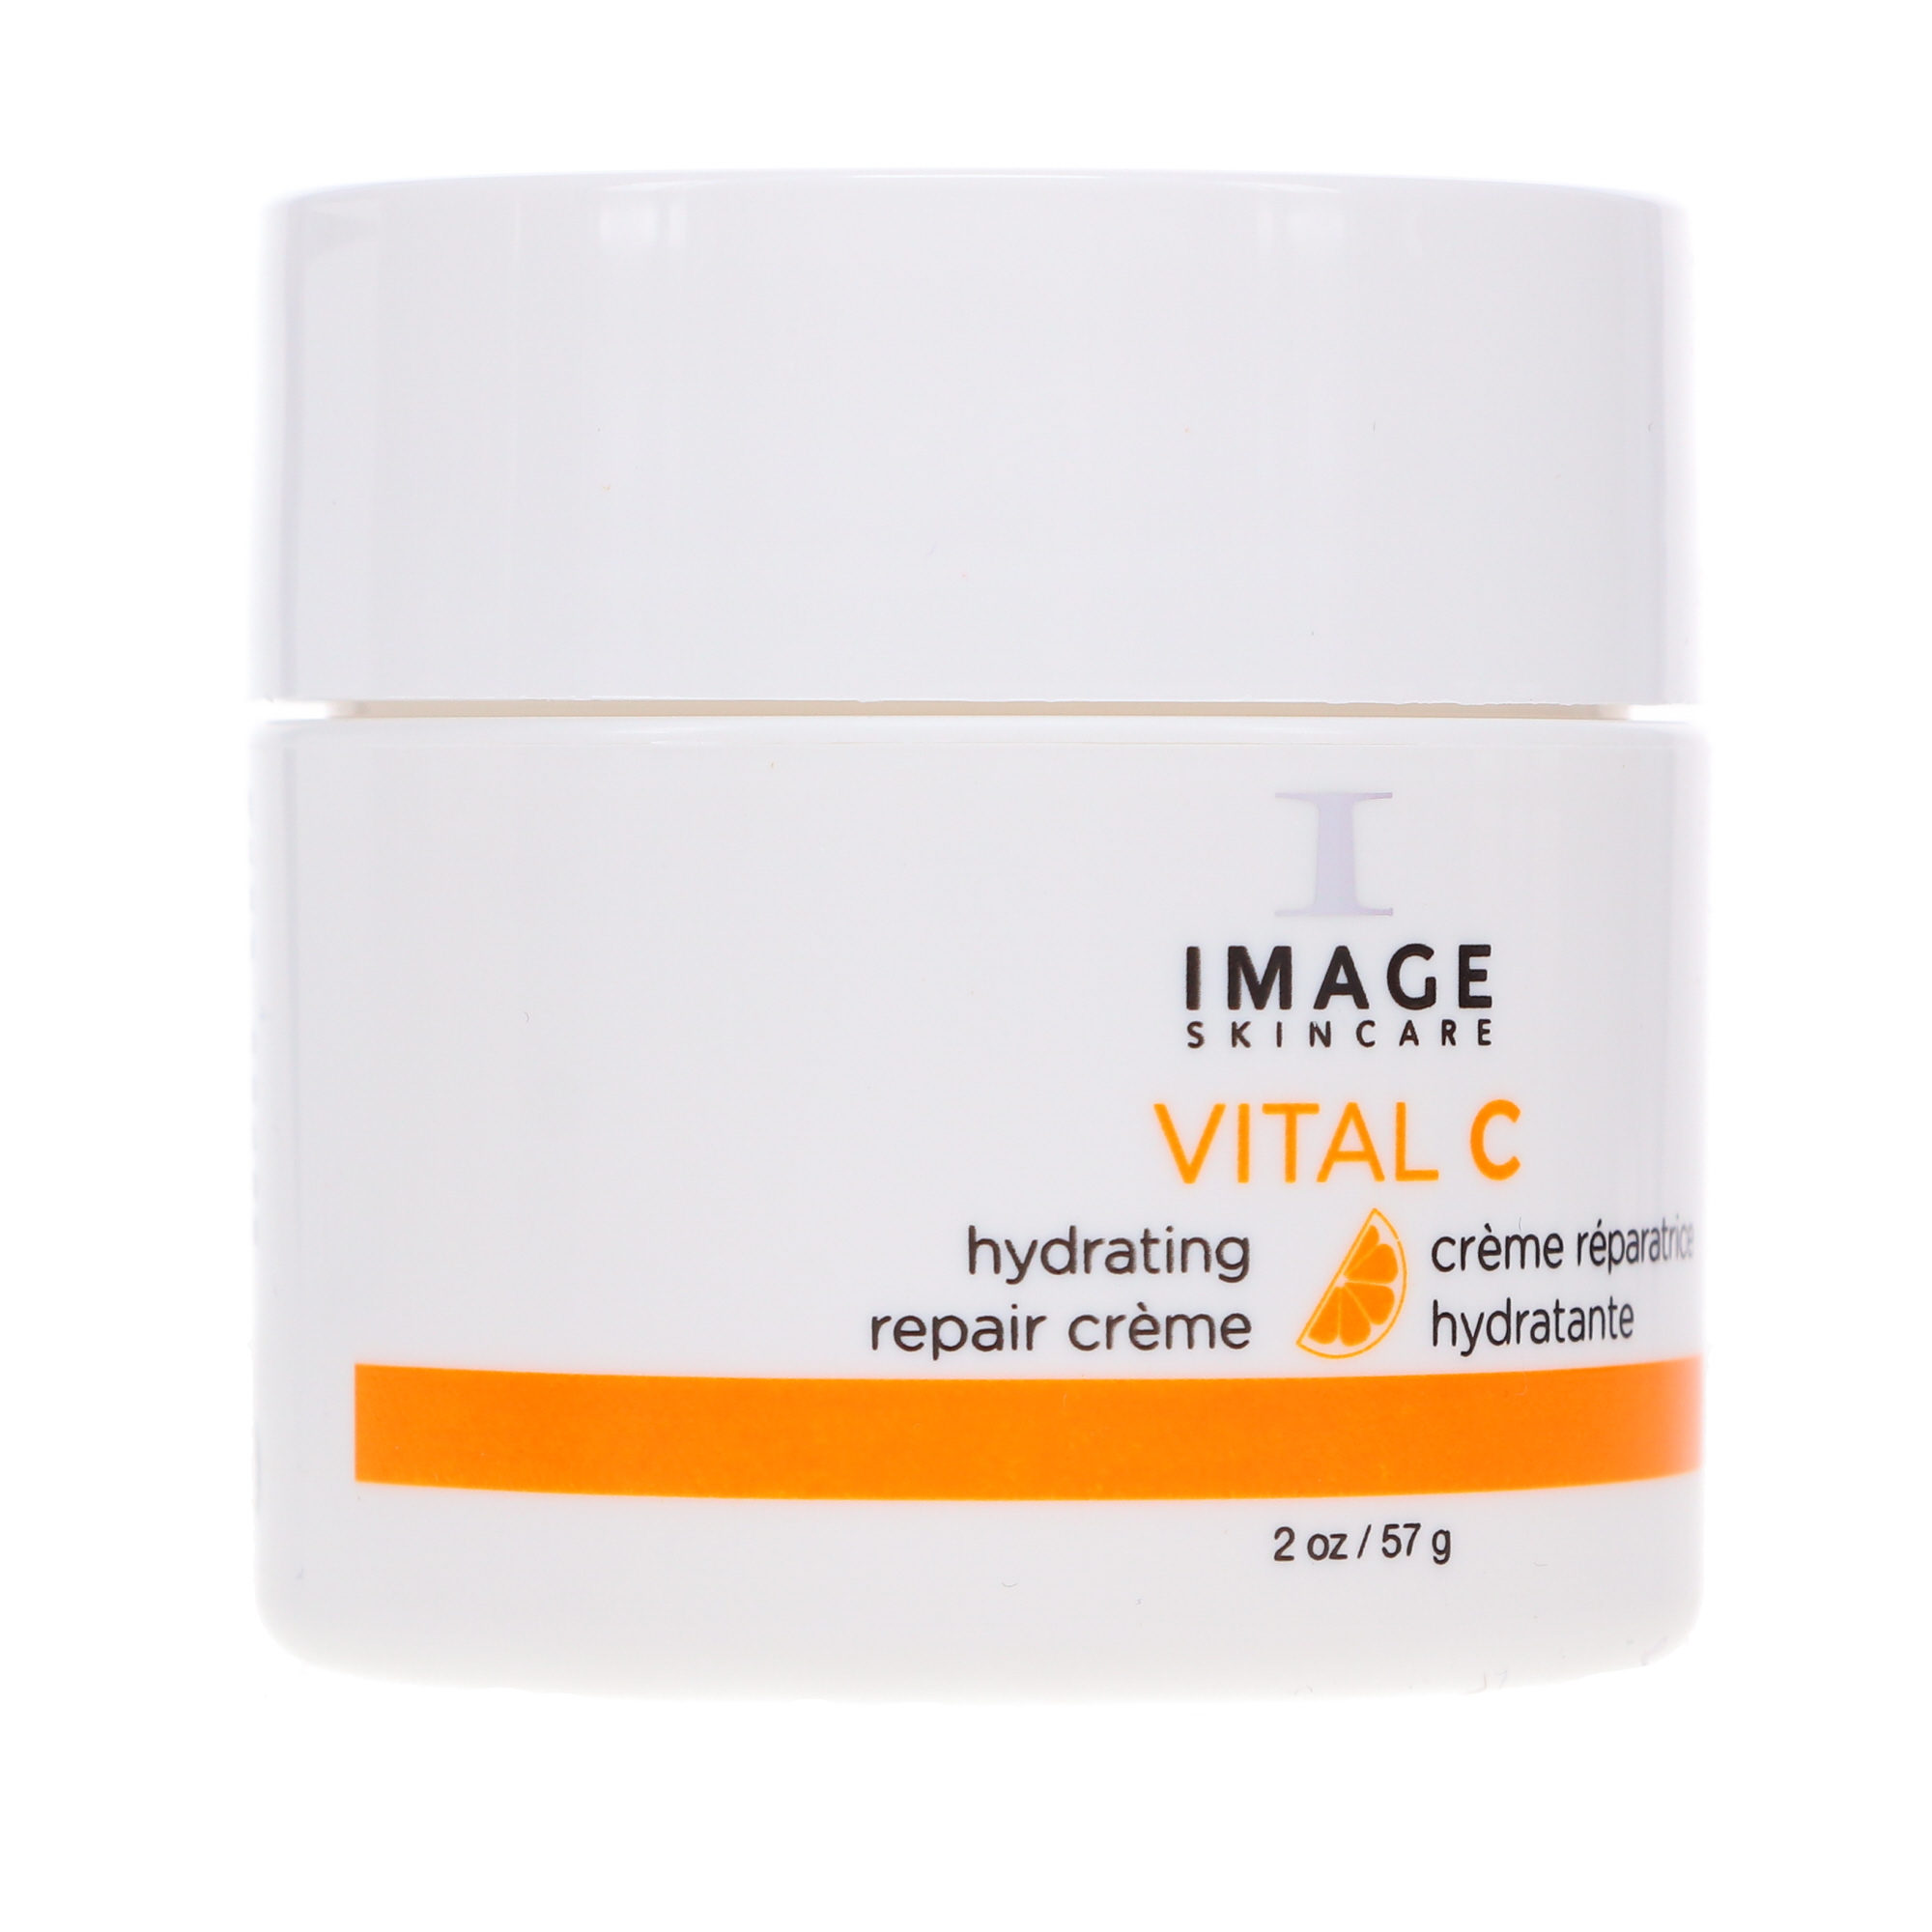 IMAGE Skincare Vital C Hydrating Repair Creme 2 oz - image 8 of 8